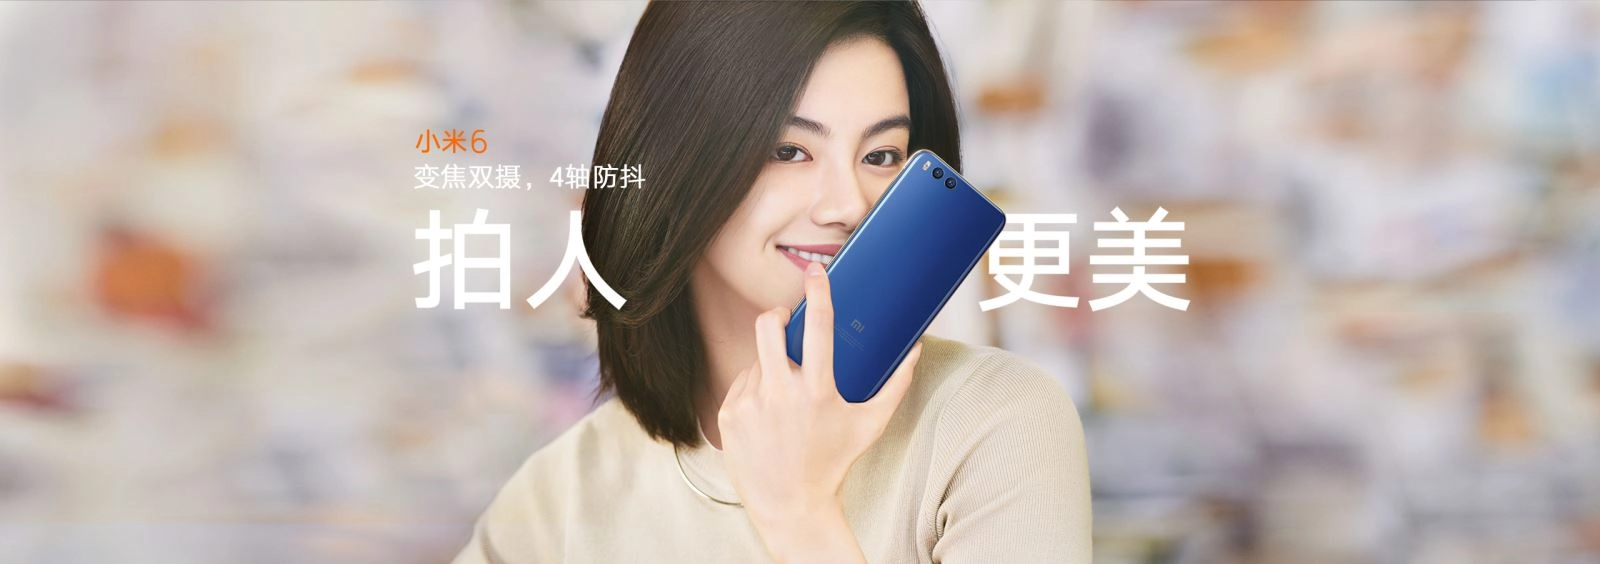 Xiaomi-mi-6-dep-huyen-ao-trong-bo-anh-chinh-thuc-16